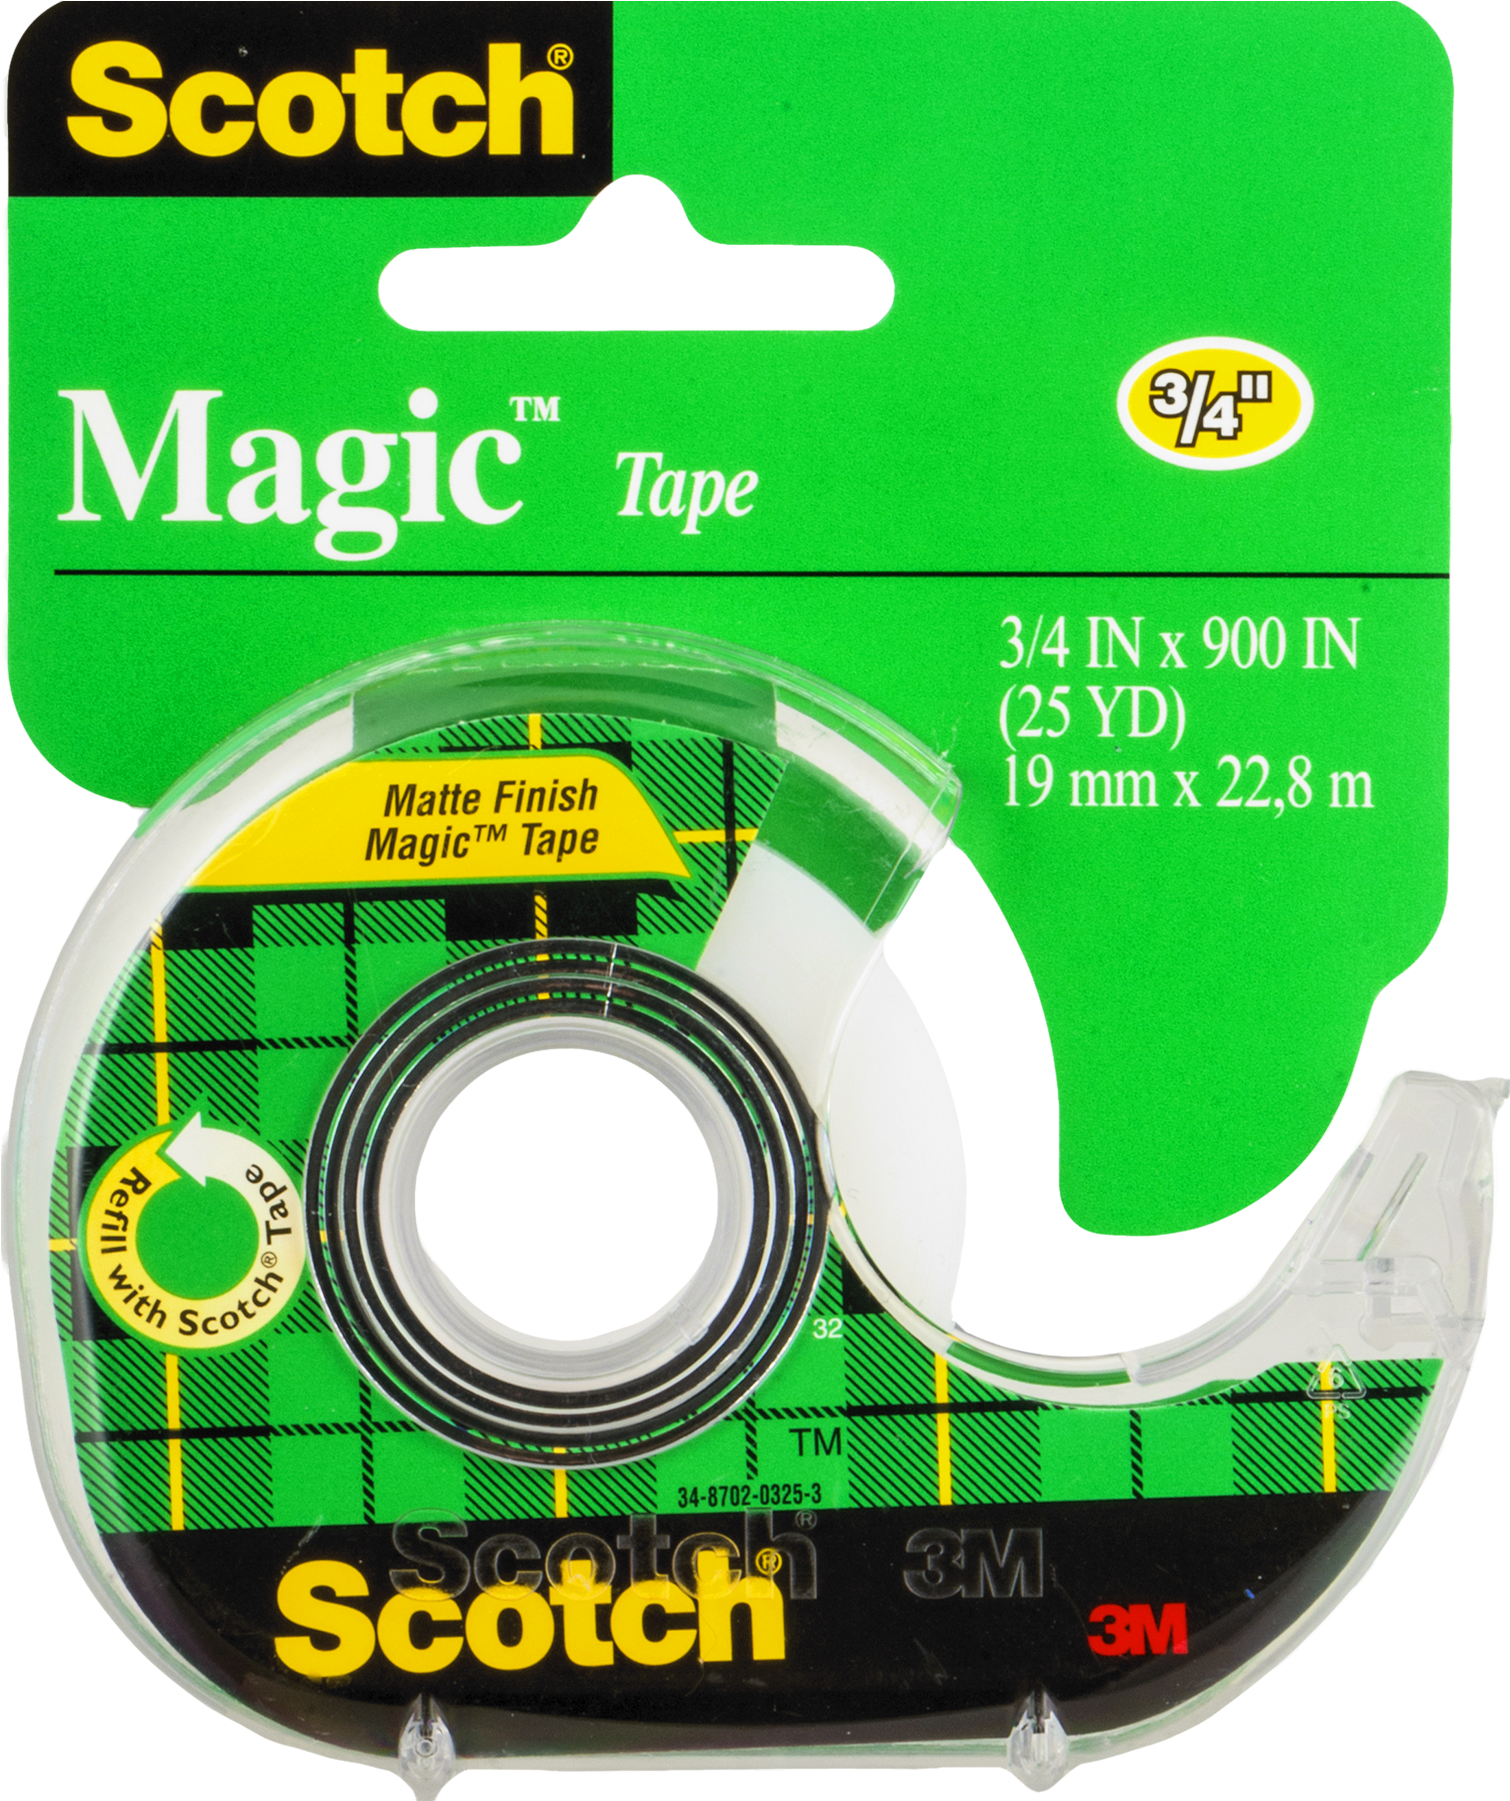 Scotch Magic Tape Packaging